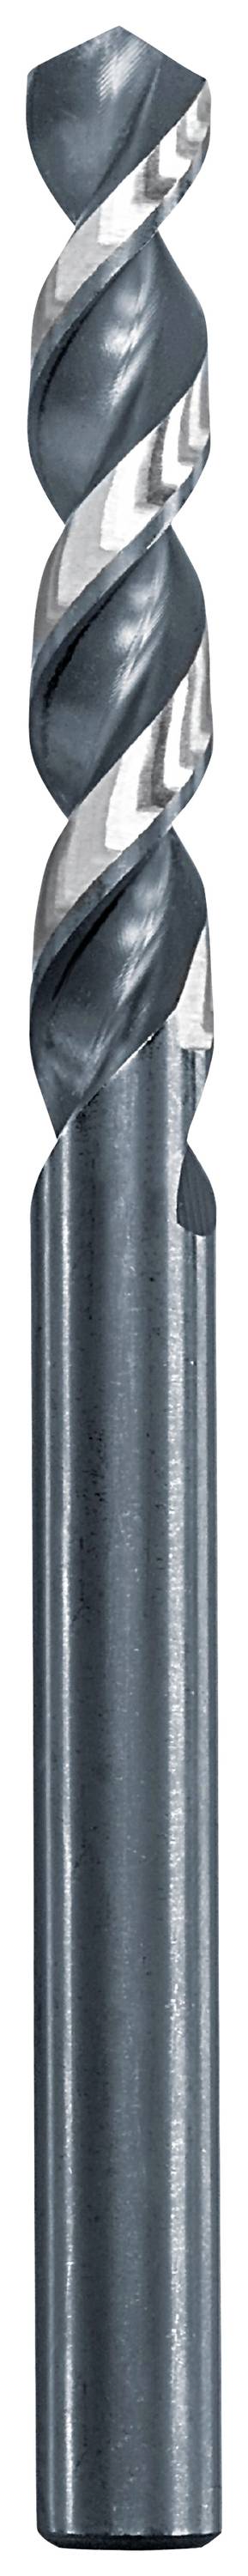 KWB 258680 Metall-Spiralbohrer 8 mm Gesamtlänge 117 mm 1 St.